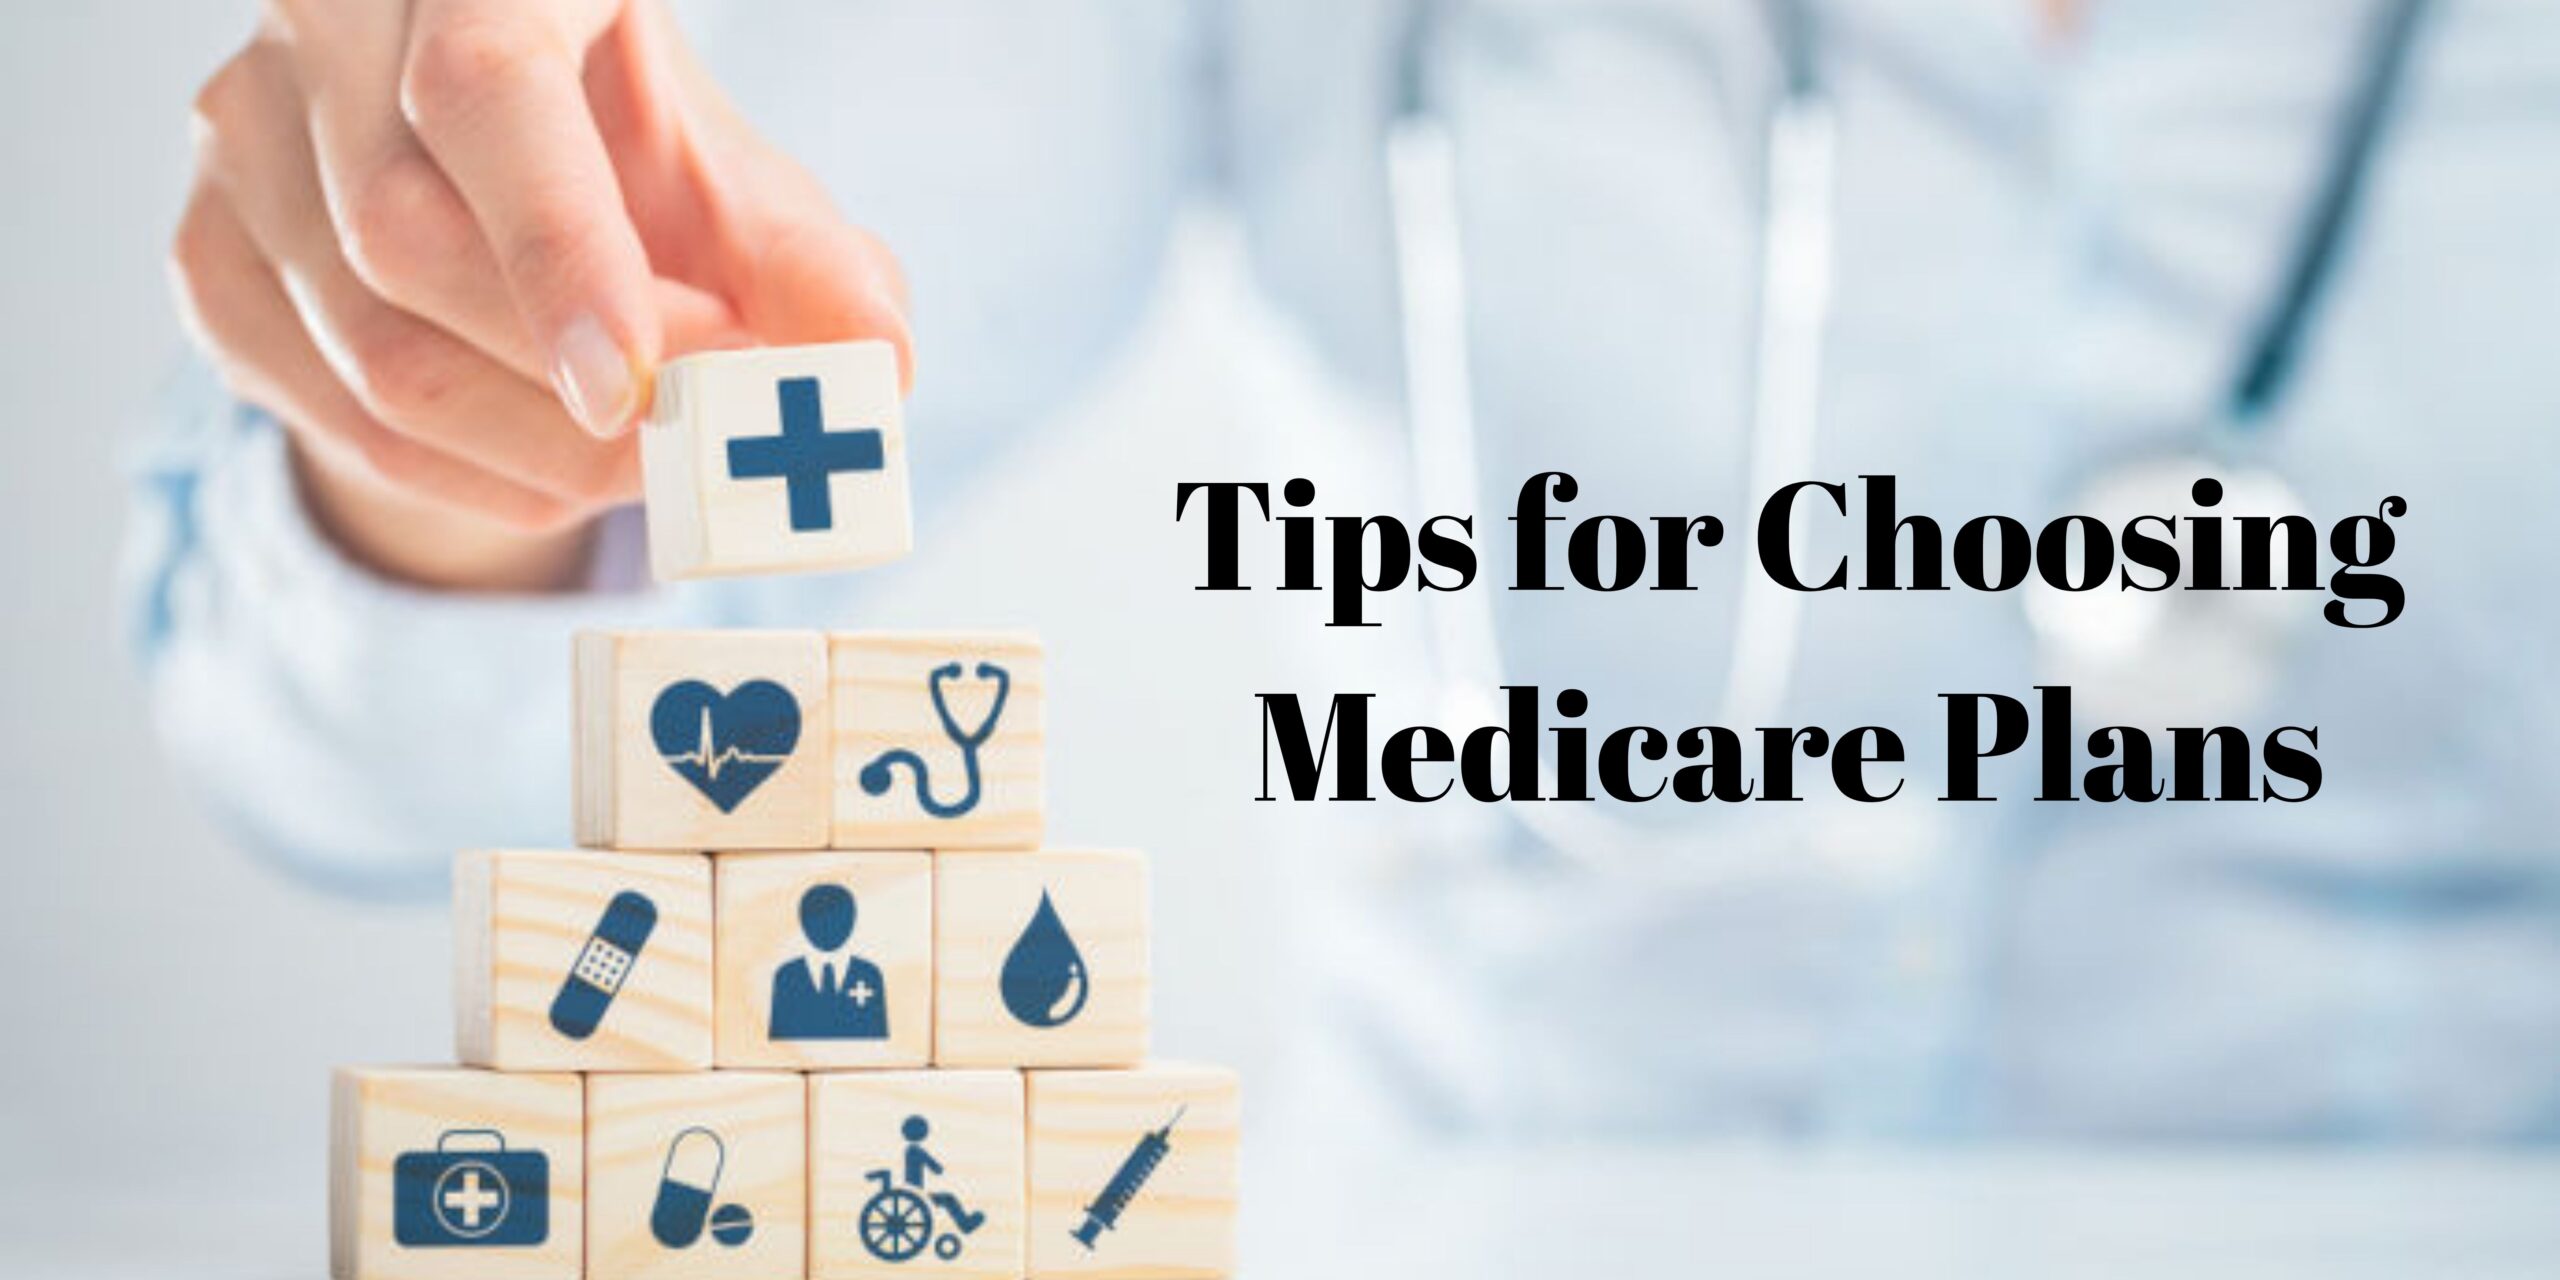 Tips for Choosing Medicare Plans